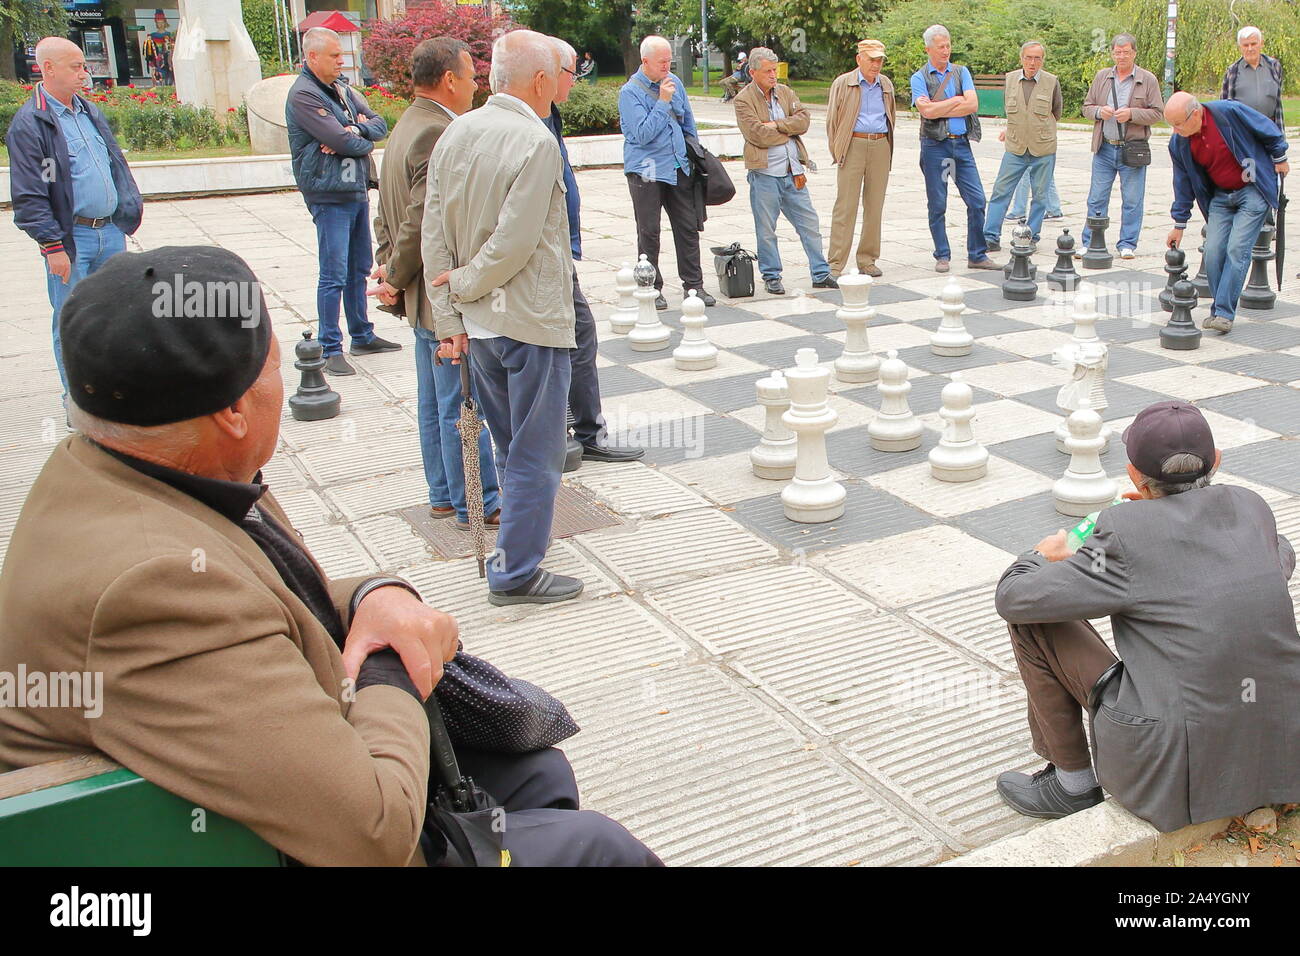 SARAJEVO, Bosnie-herzégovine - 23 septembre 2019 : les joueurs d'échecs locaux réunis à la place de la libération et de jouer avec un échiquier à grande échelle Banque D'Images